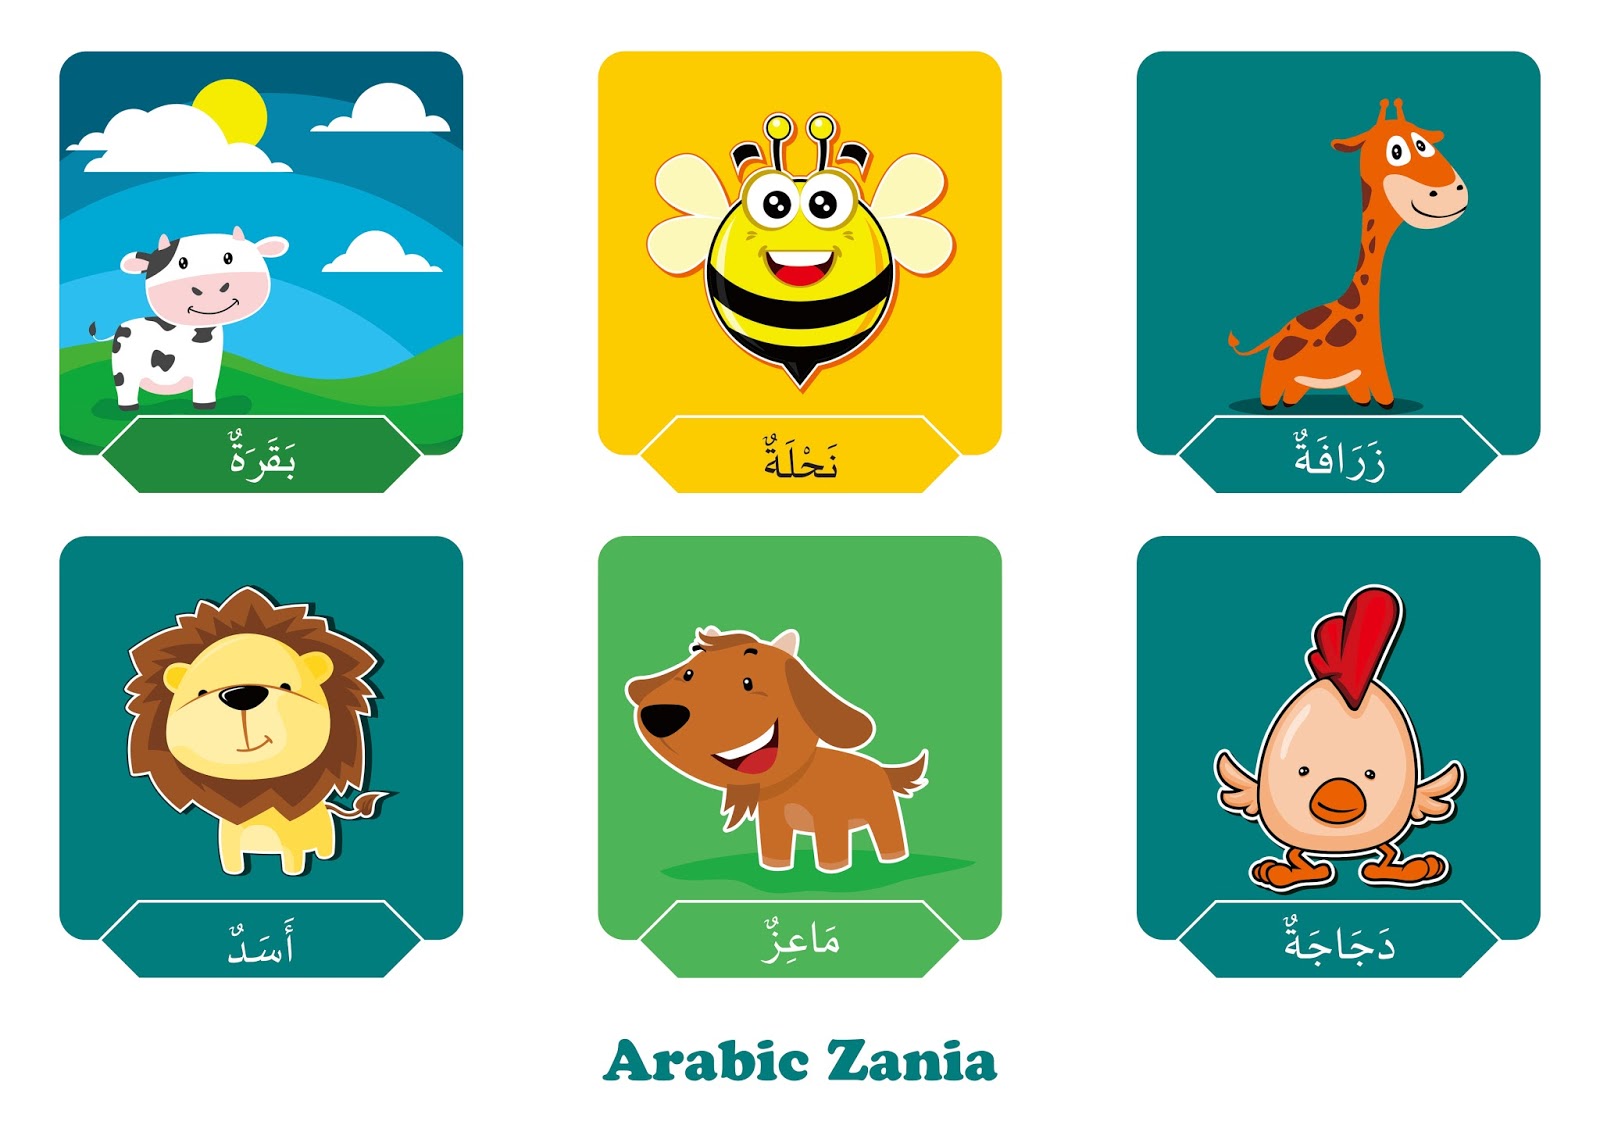 Arab bahasa serangga dalam Senarai nama